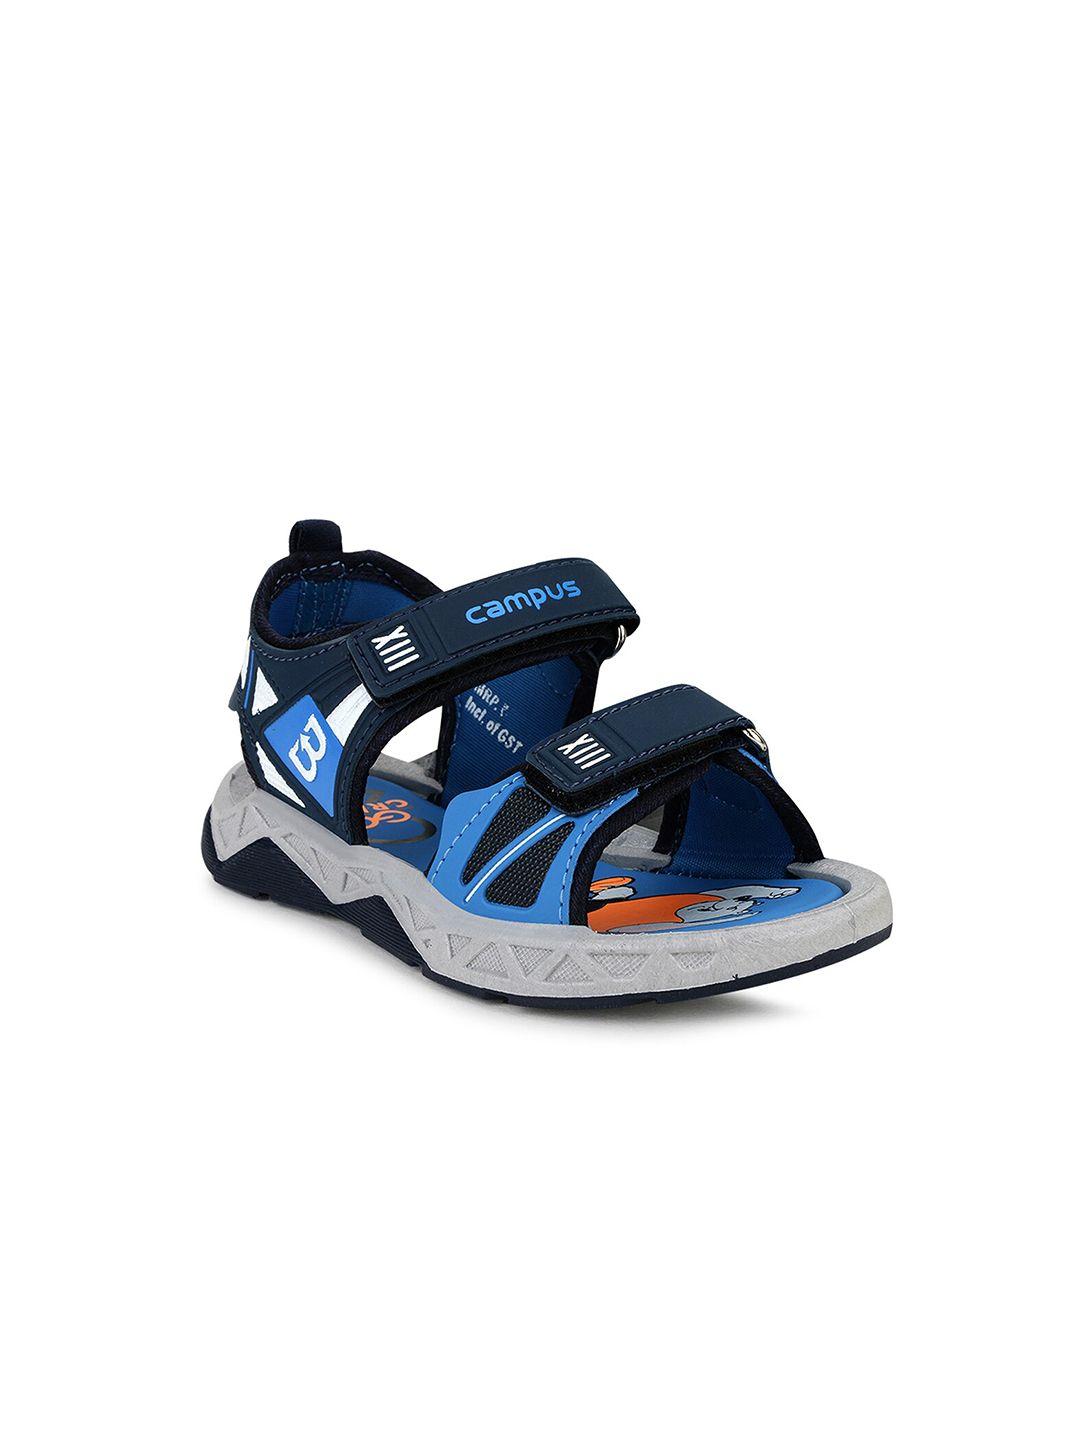 campus kids navy blue & blue sports sandals